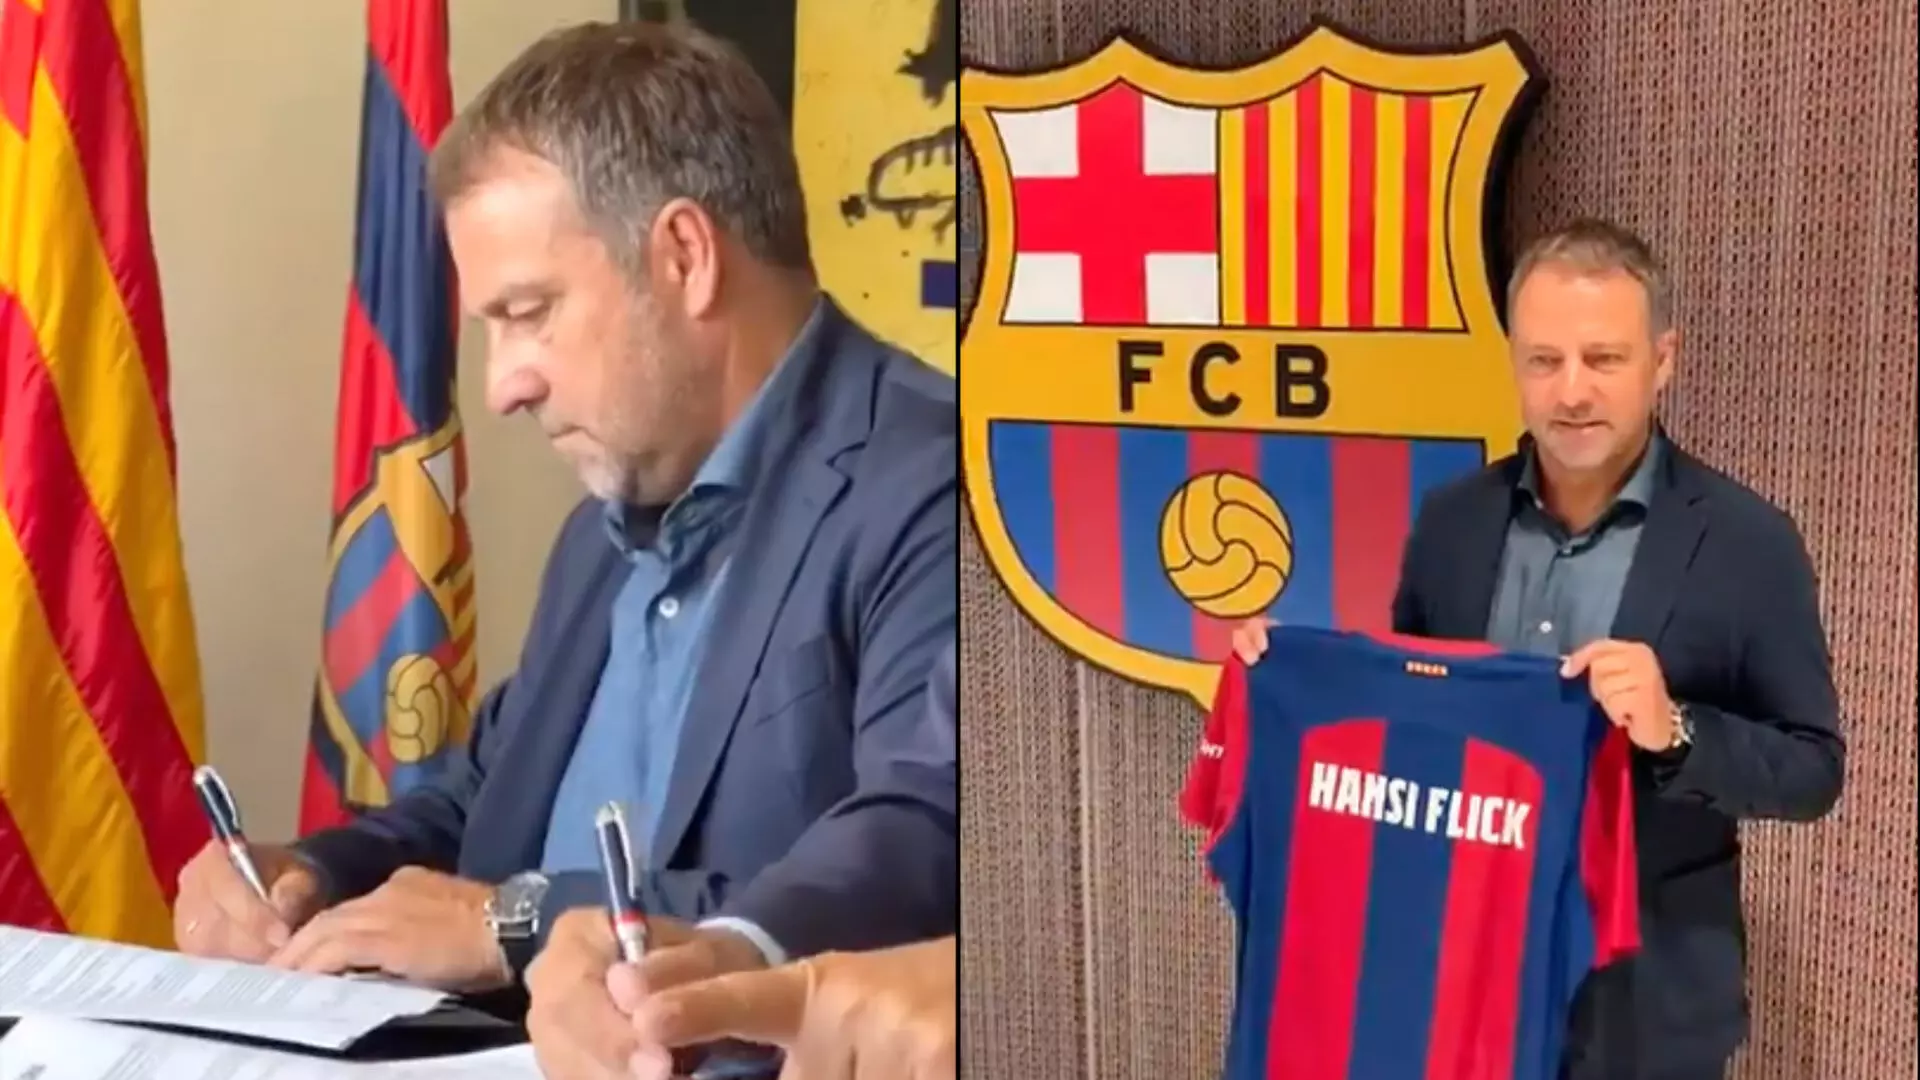 हांसी फ्लिक जून 2026 तक एफसी बार्सिलोना के मैनेजर के रूप में ज़ावी की जगह लेंगे